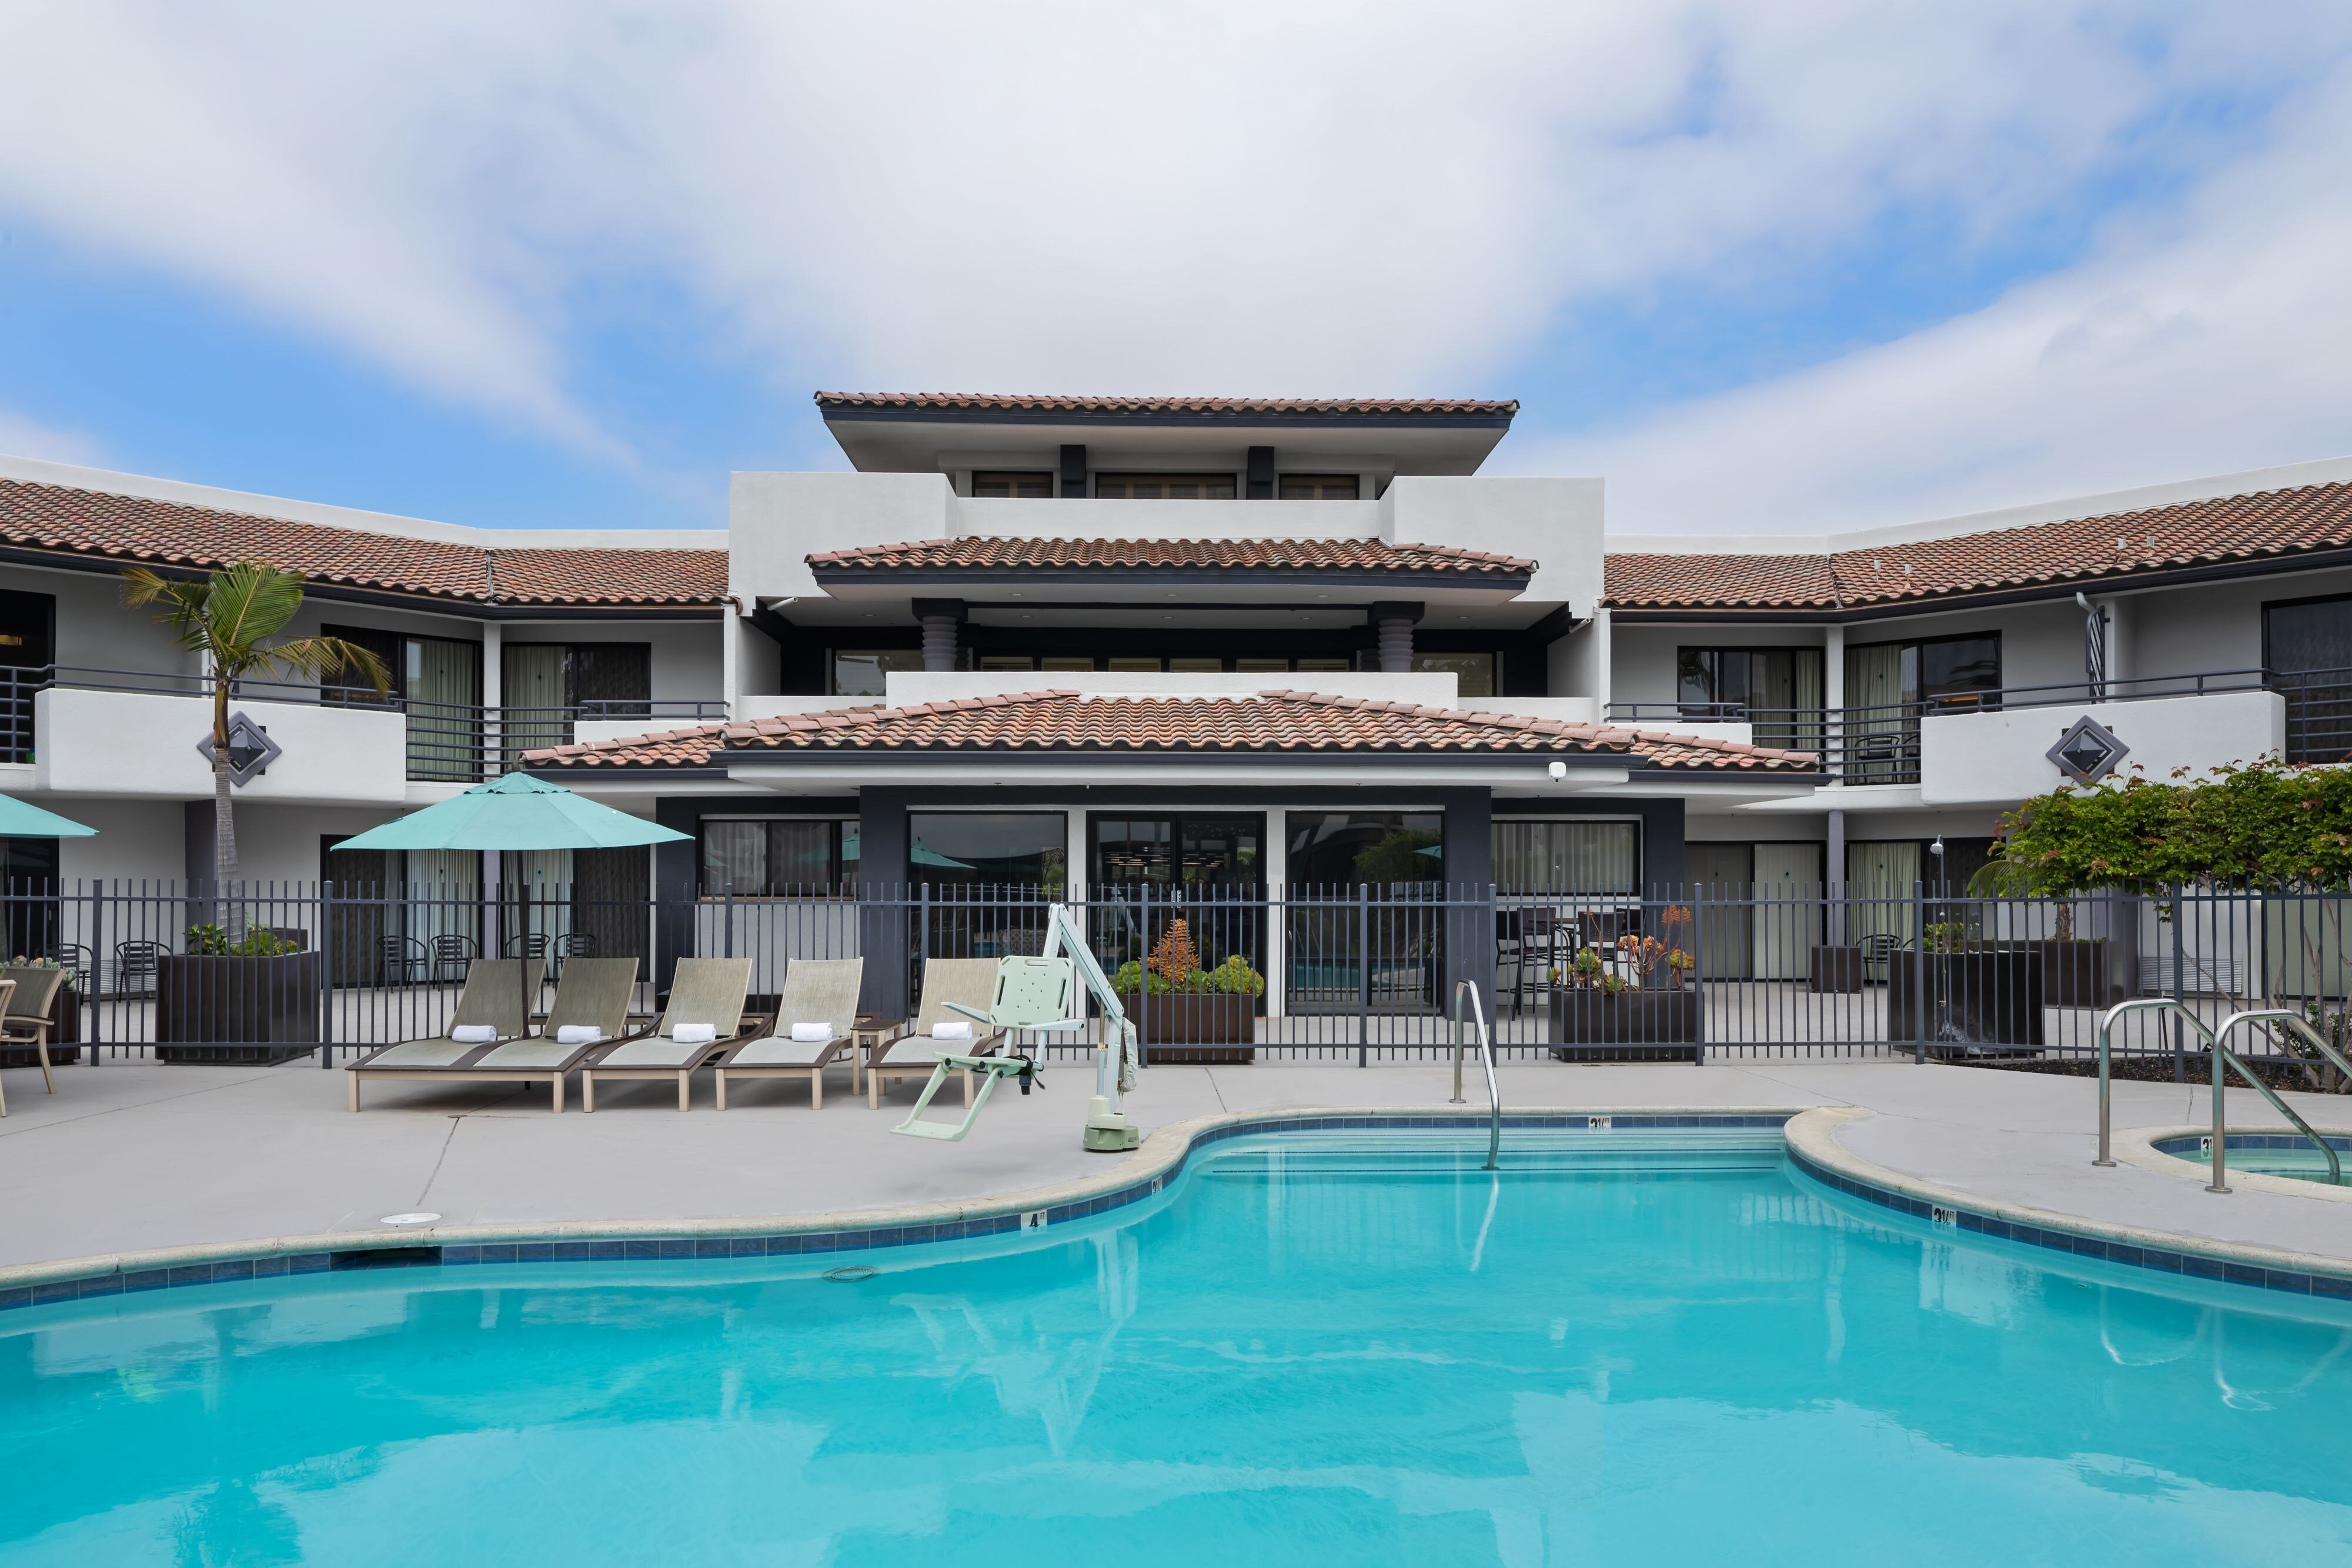 Modern and Elegant Hotel Pool